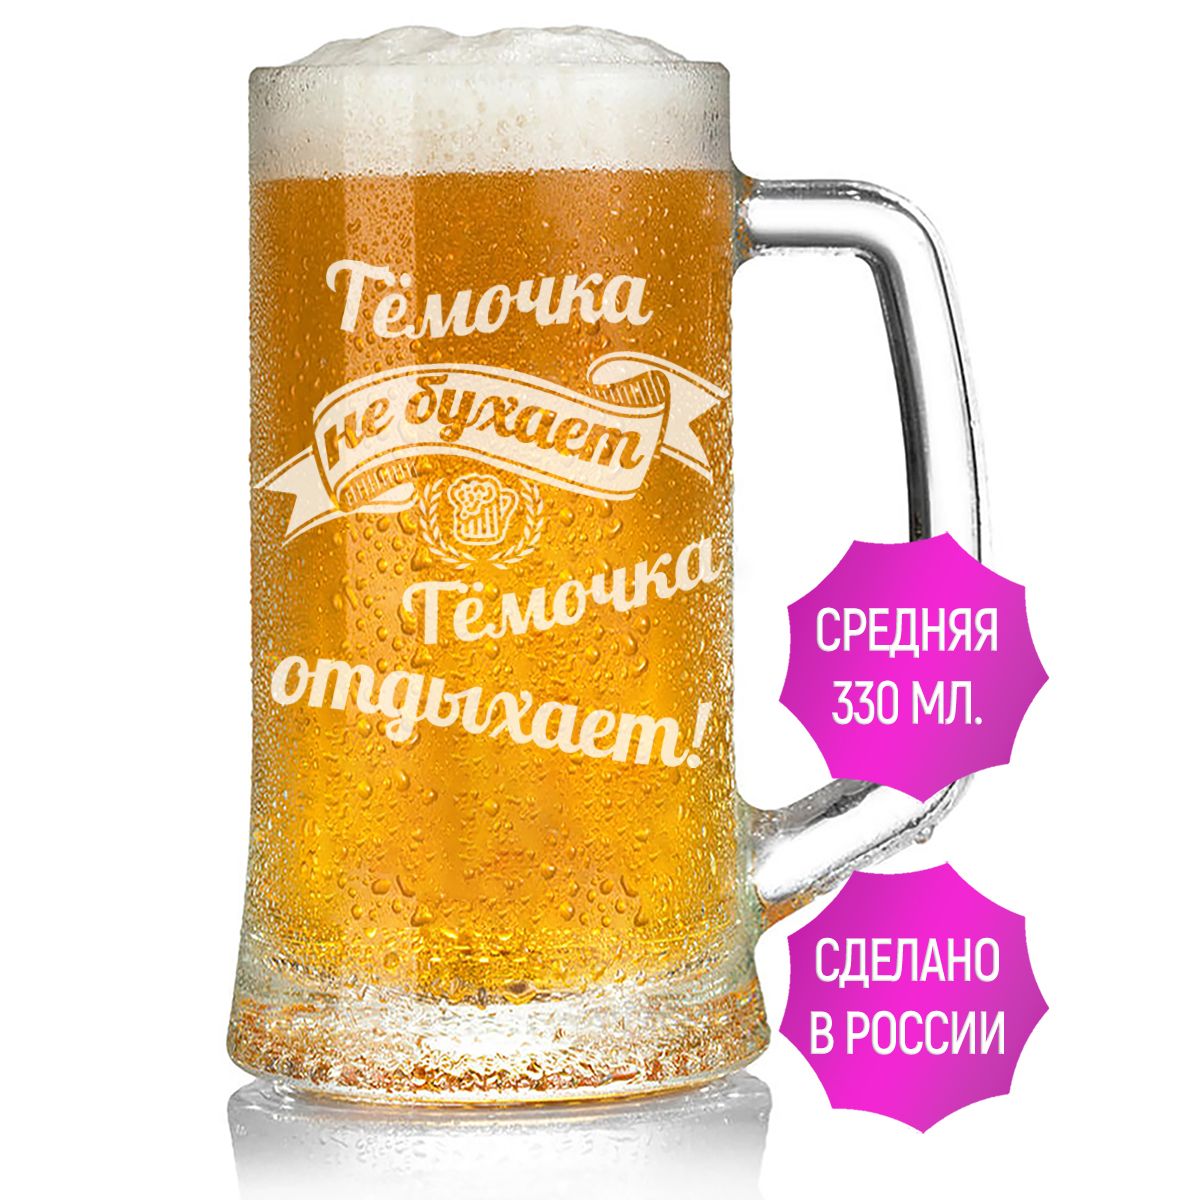 Бокал для пива AV Podarki Тёмочка не бухает Тёмочка отдыхает 330 мл.